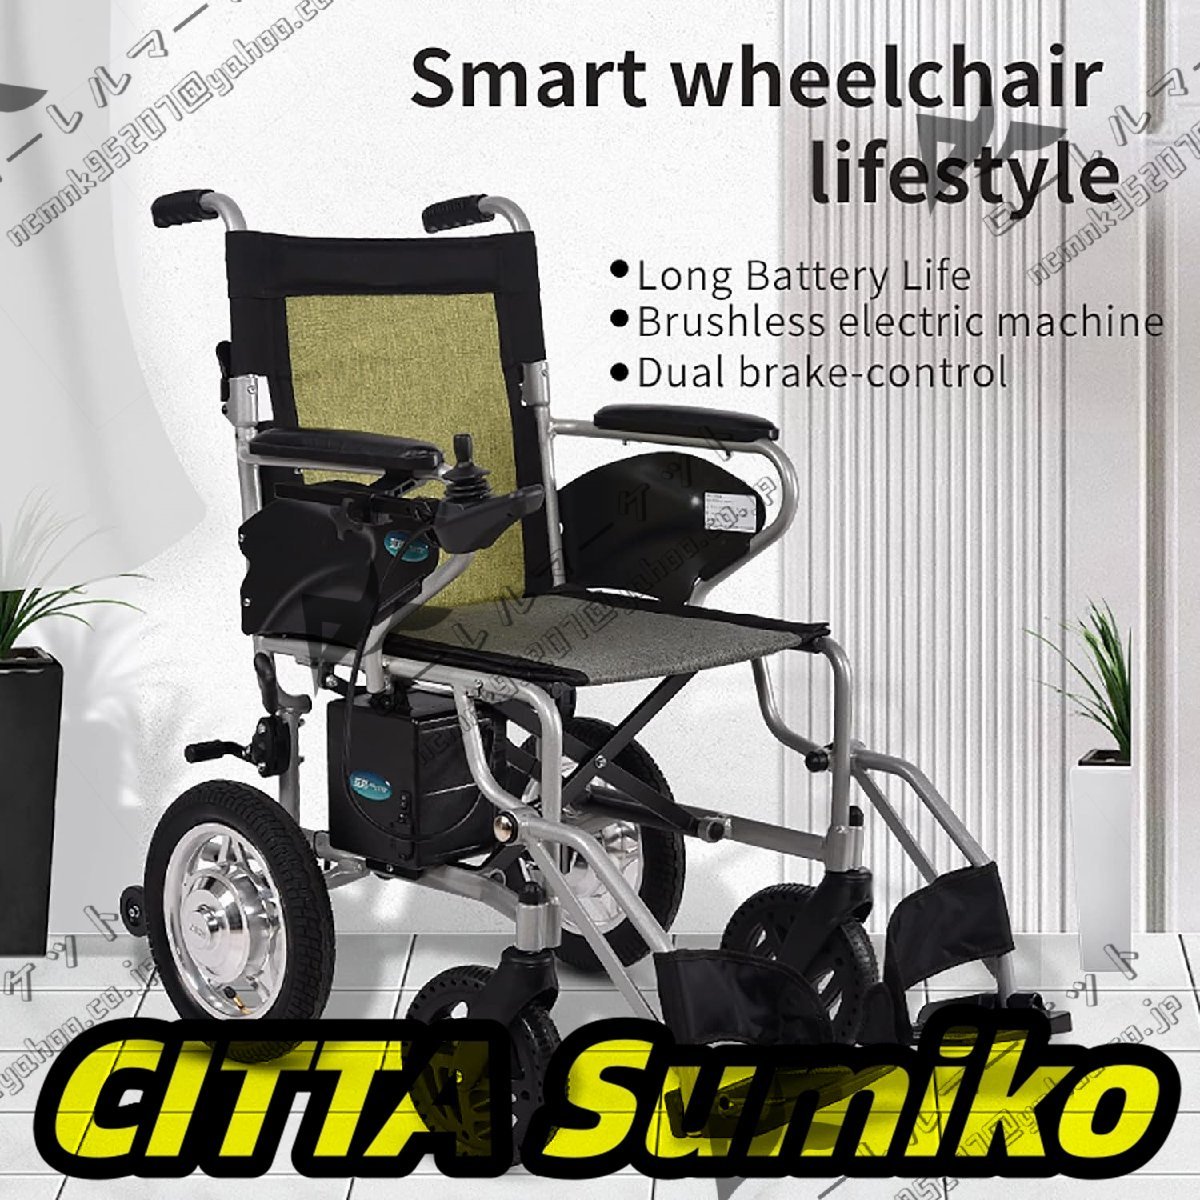 軽量電動車椅子 360° コントロール アームレスト インテリジェント ブレーキ システム 23Km 耐久性 220 ポンド負荷 屋外旅行家庭用車椅子_画像2